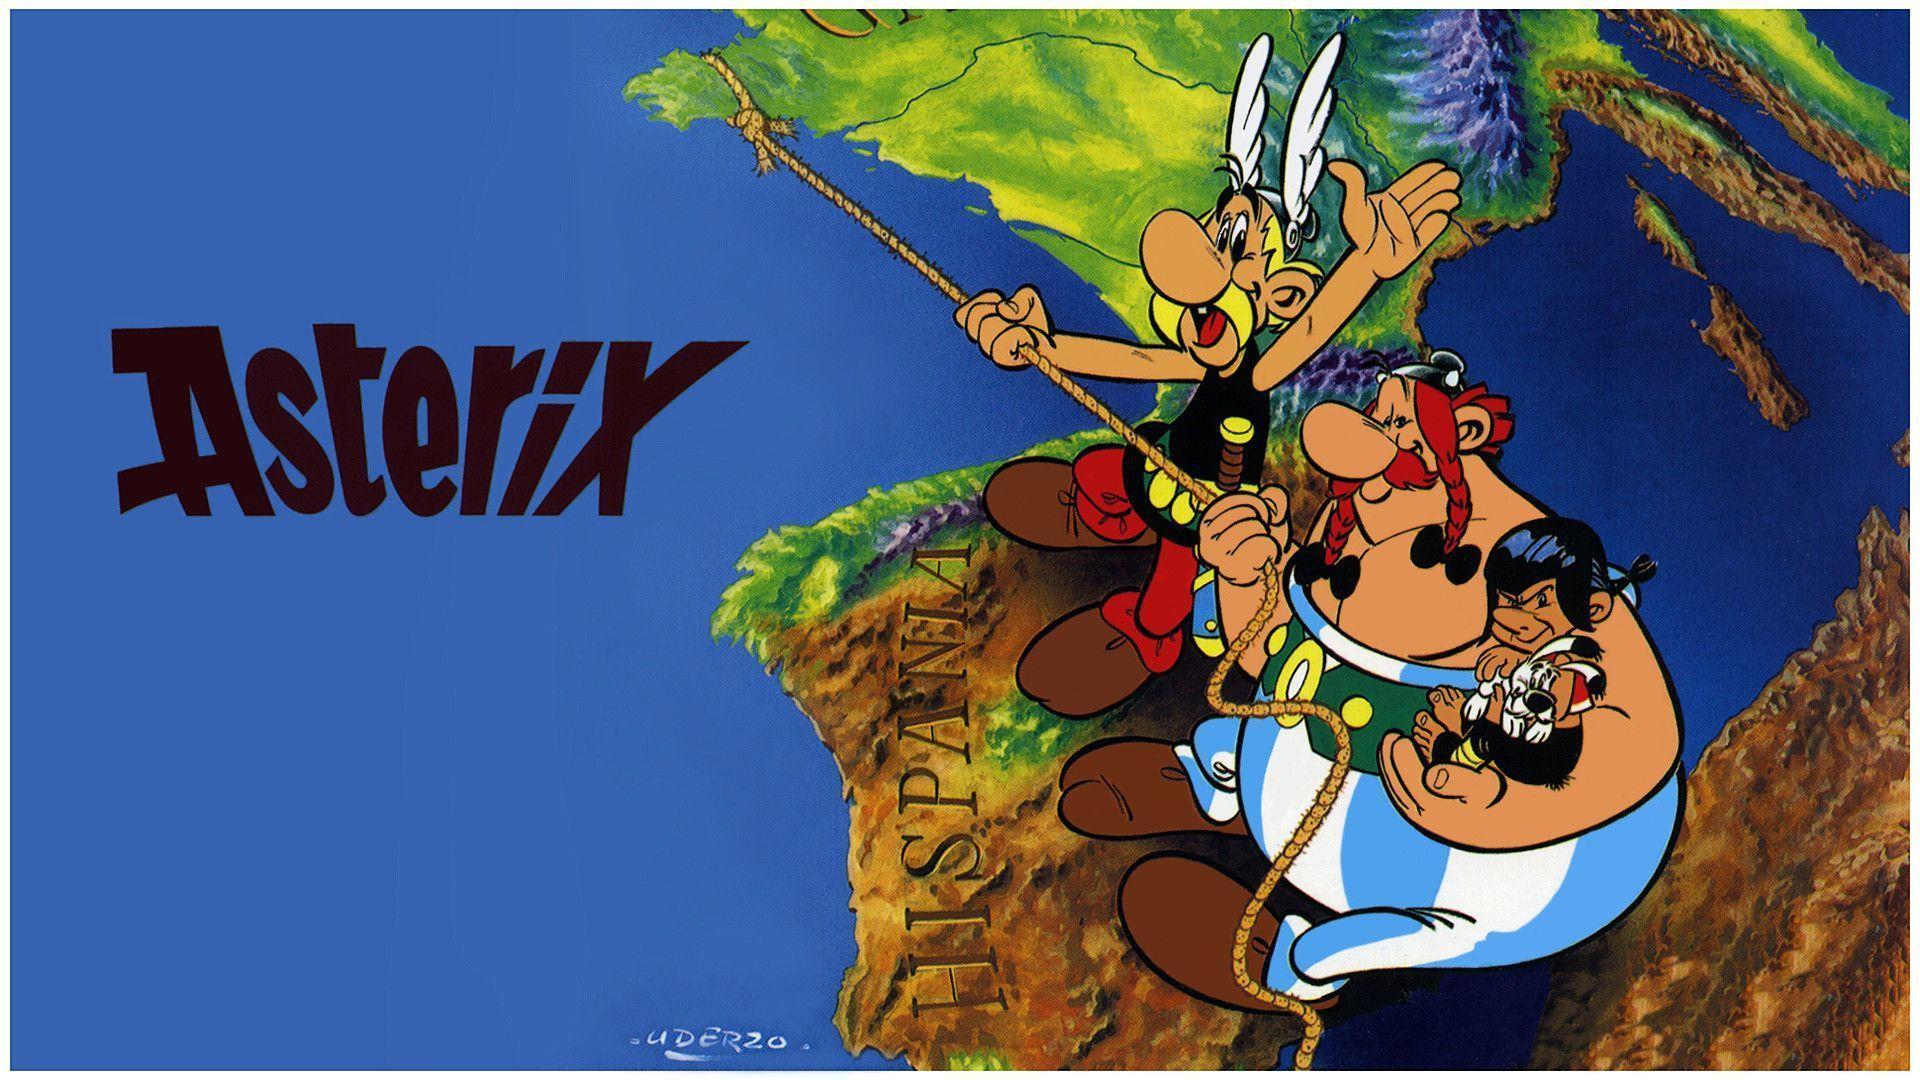 Astérix y Obelix: Wallpaper